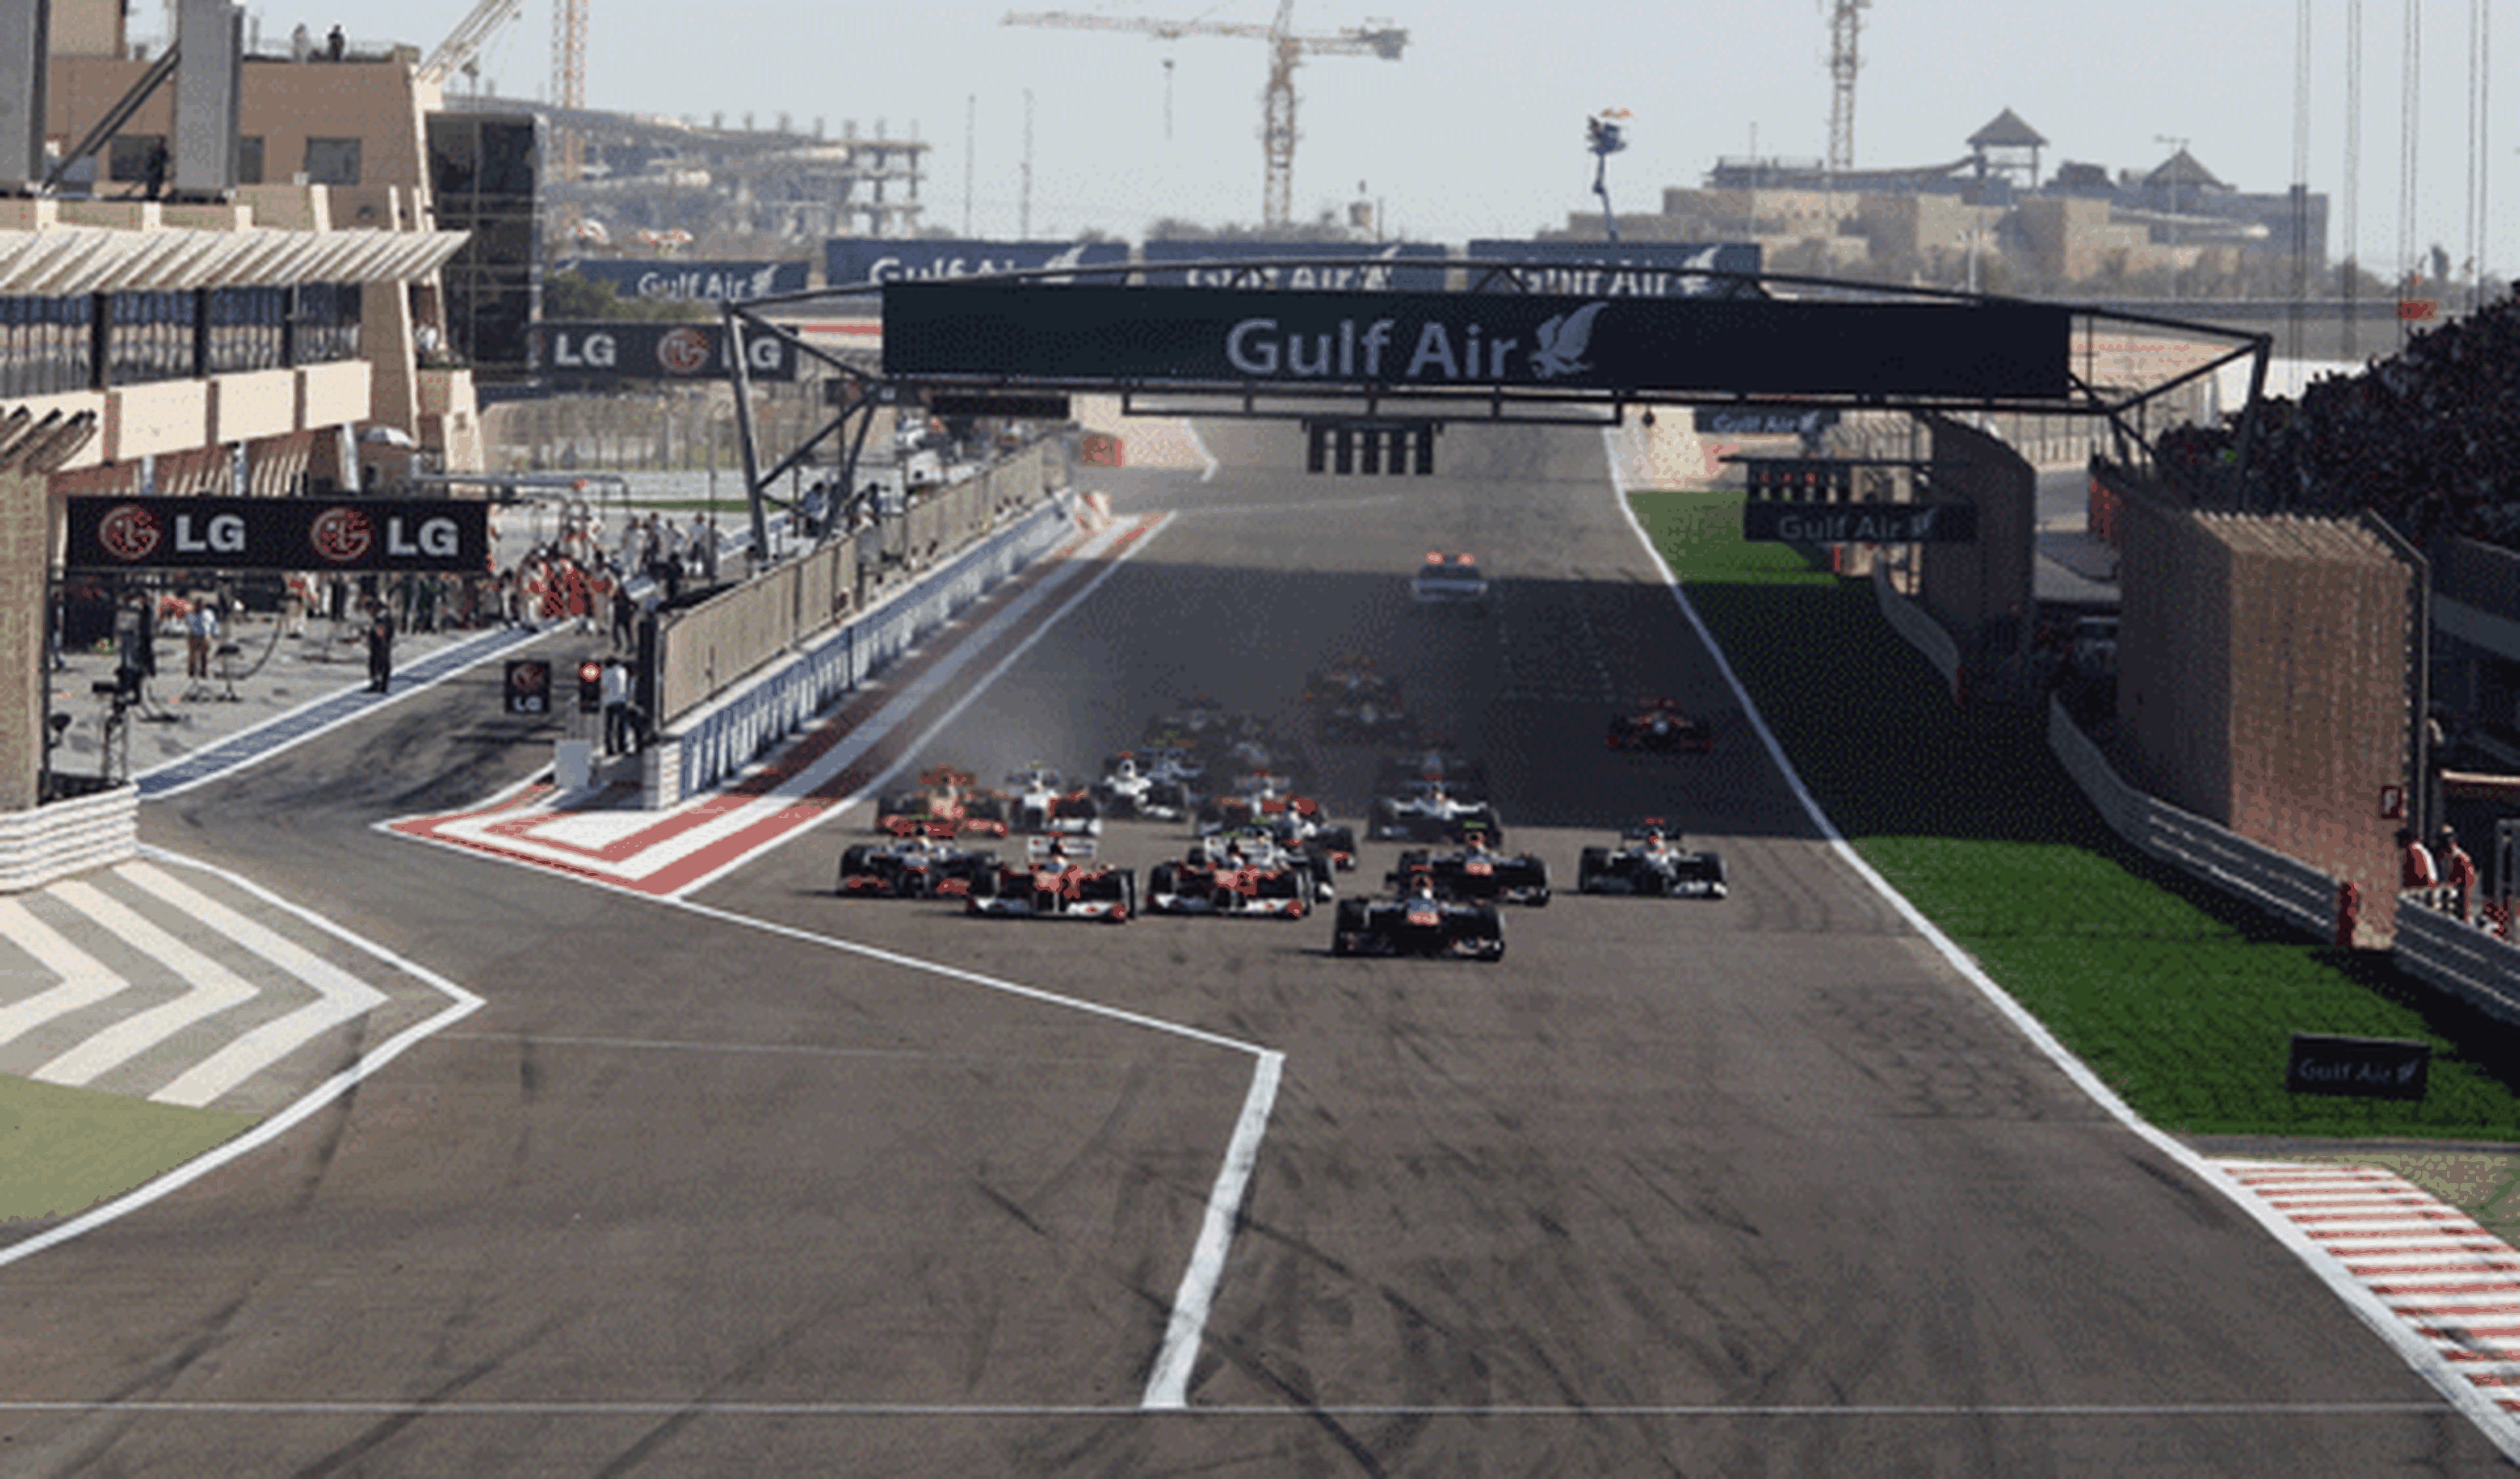 La primera curva de Bahrein se llamará Schumacher